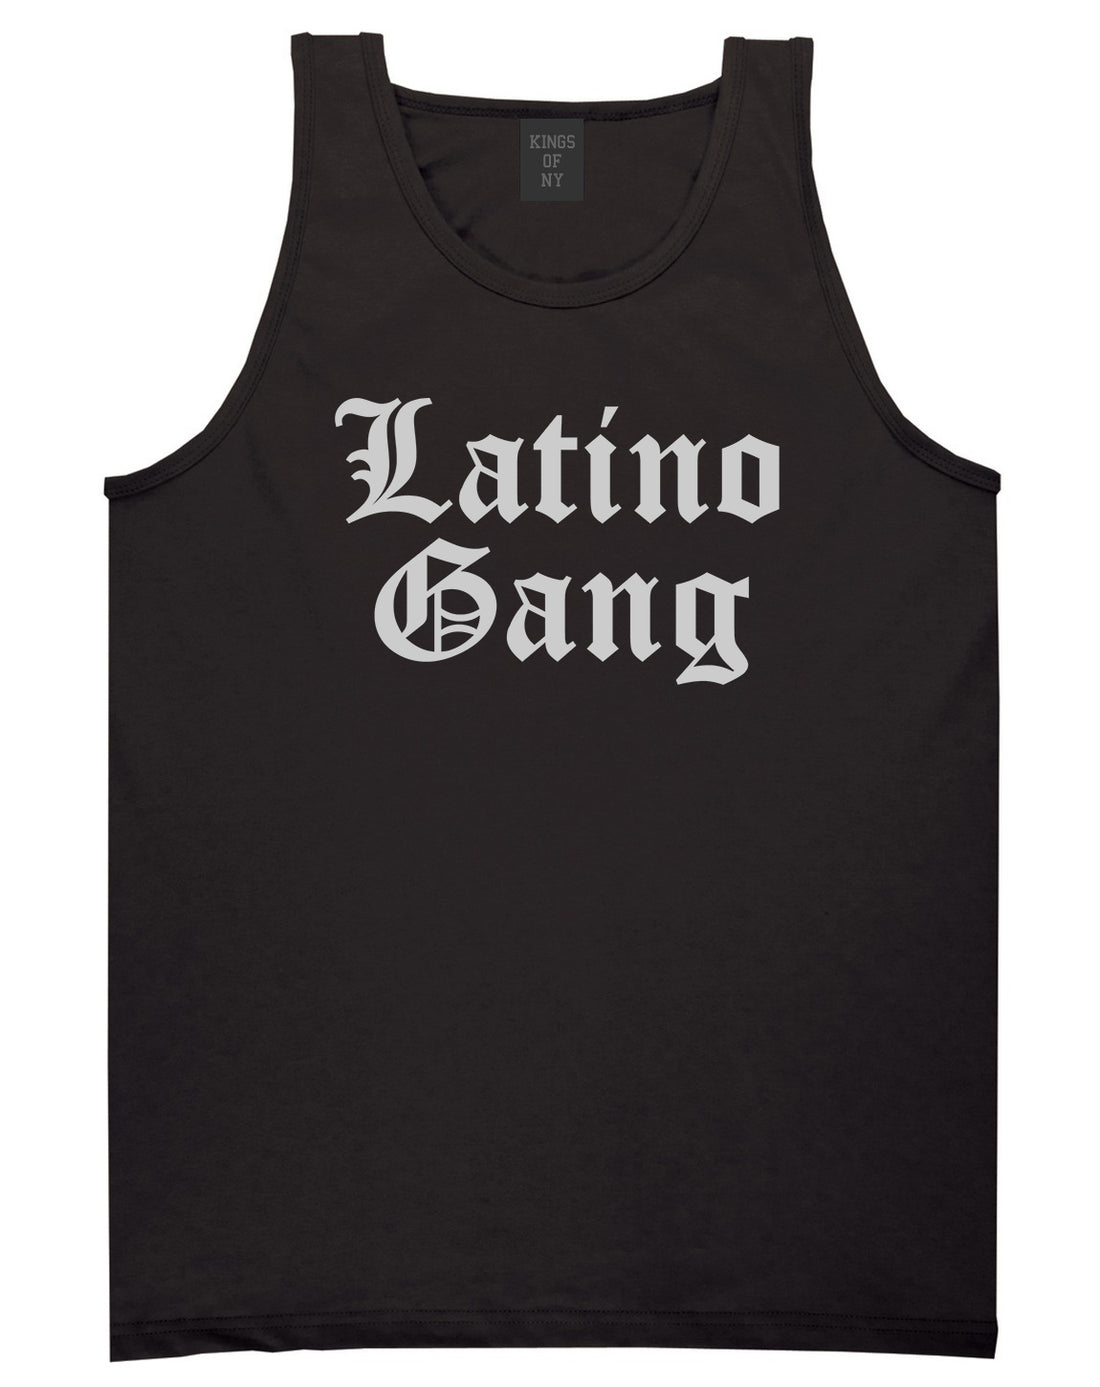 Latino Gang Mens Tank Top Shirt Black by Kings Of NY